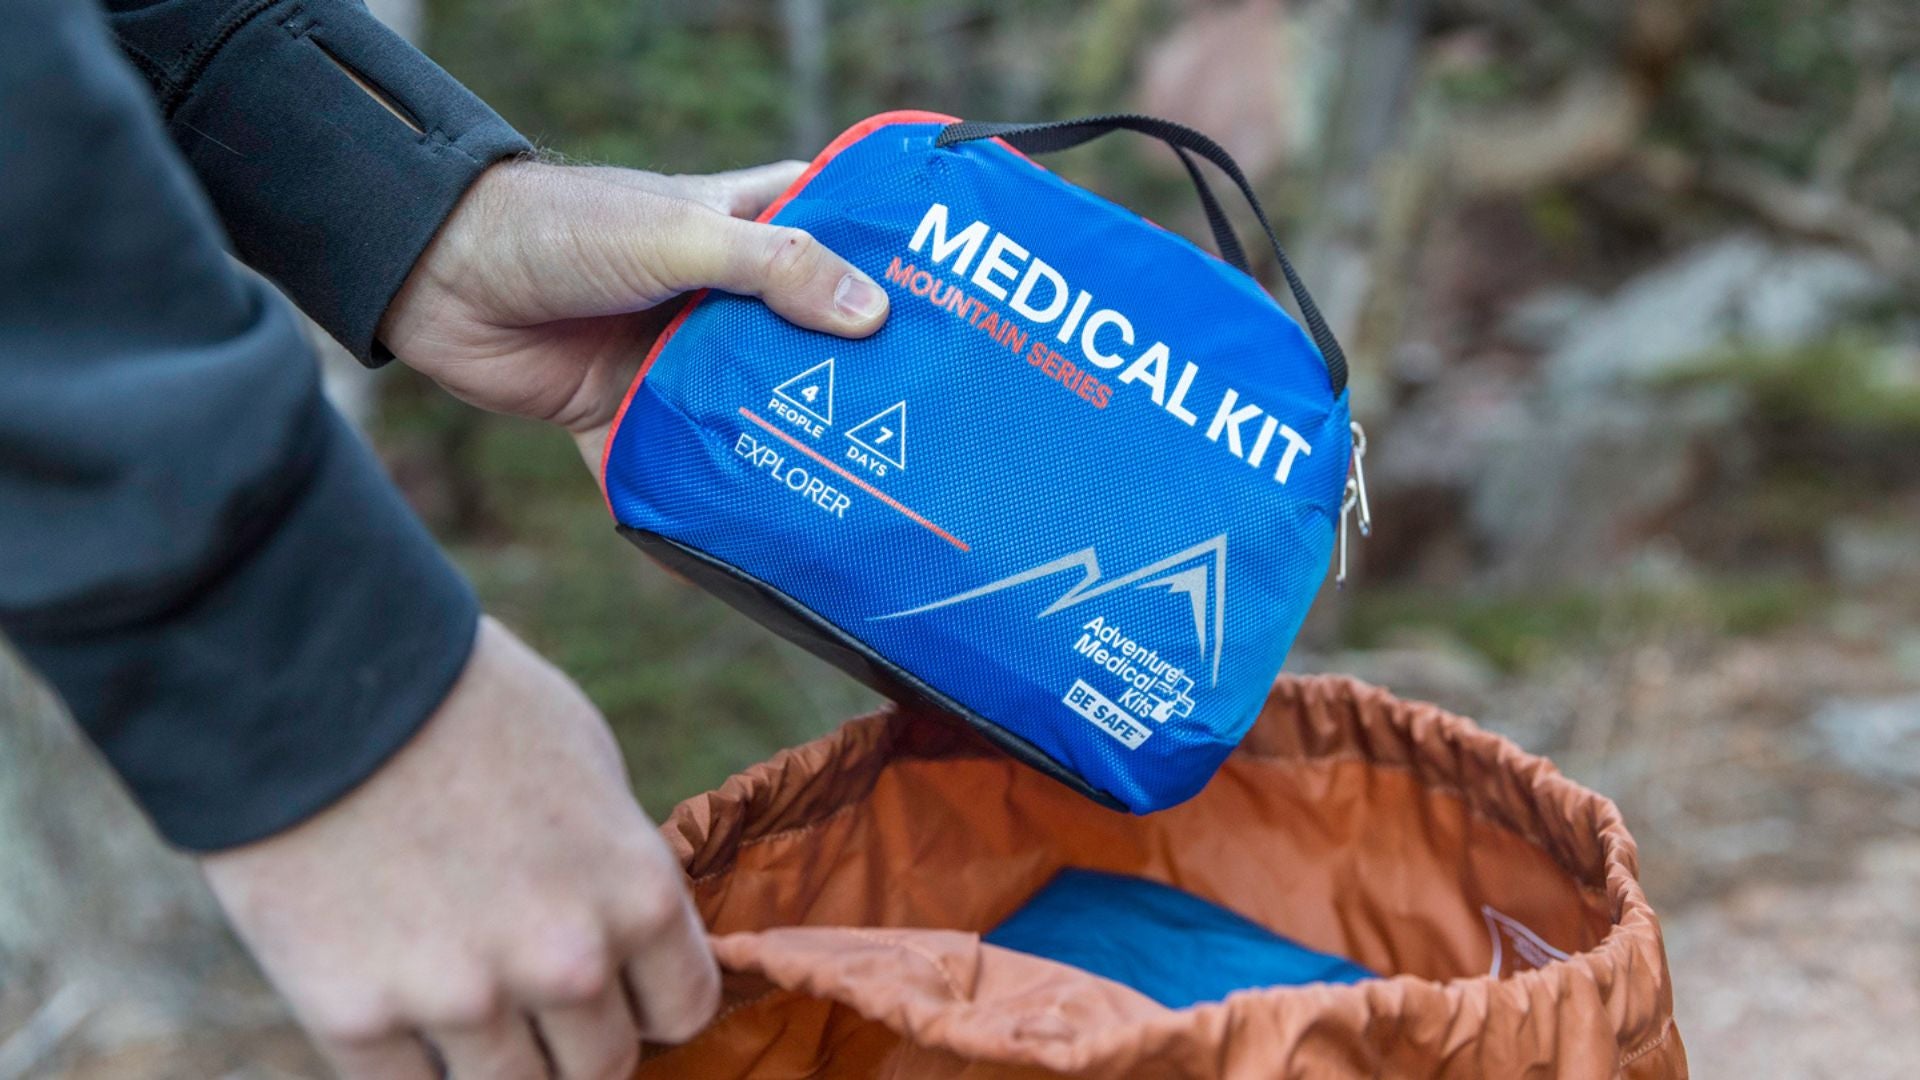 Man's hand holding Explorer Medical Kit